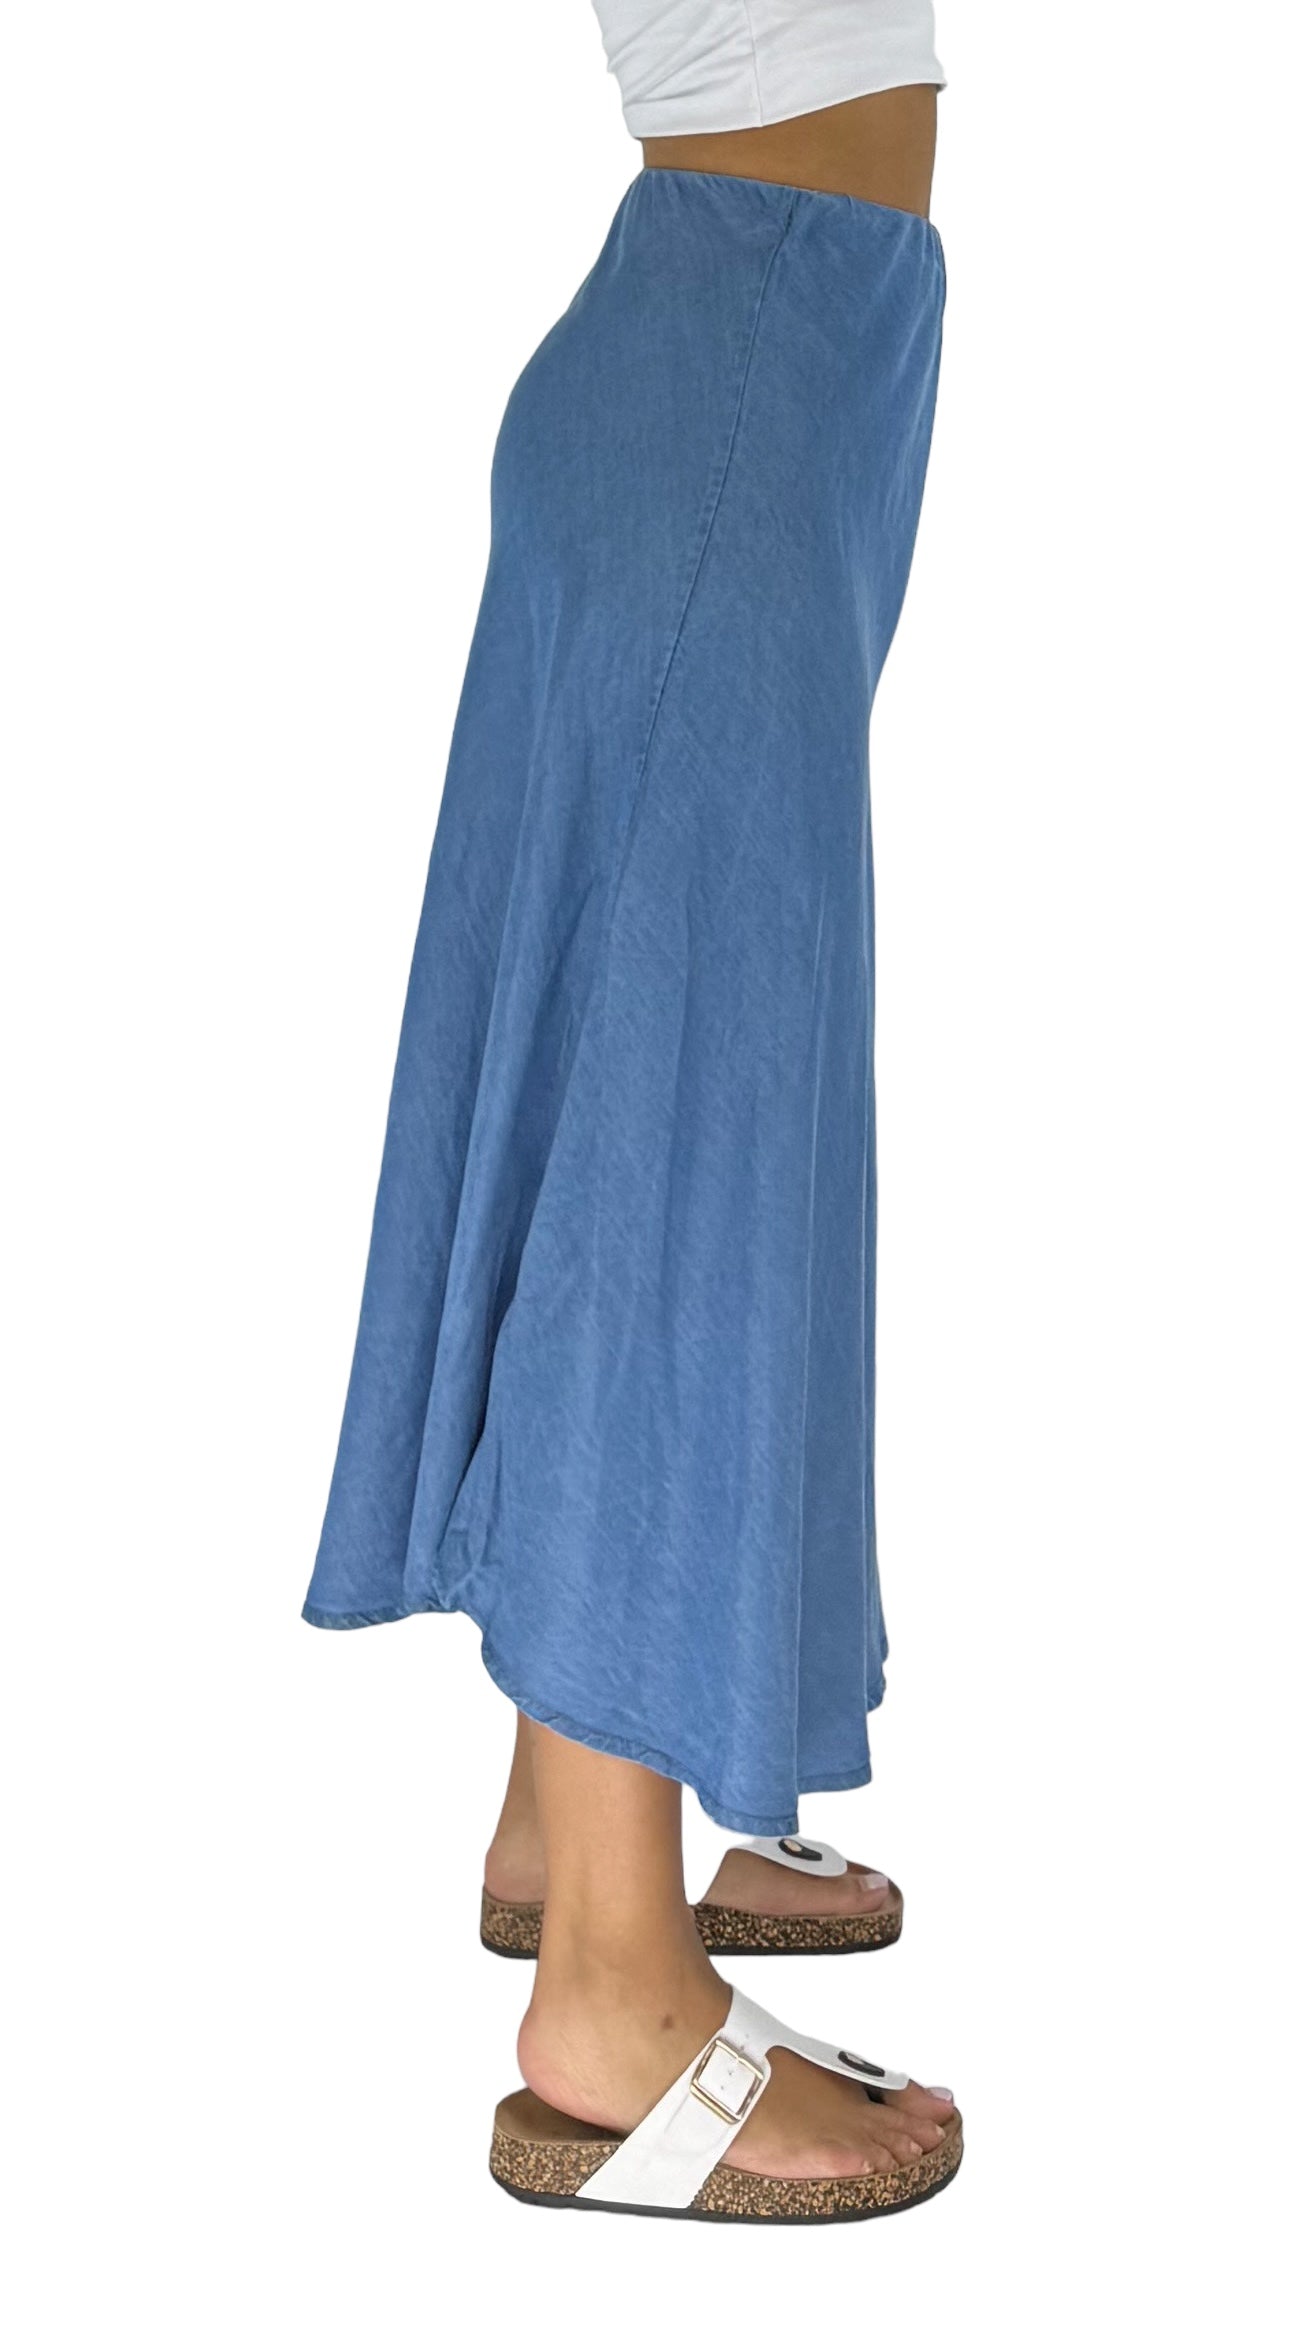 Aline blue skirt